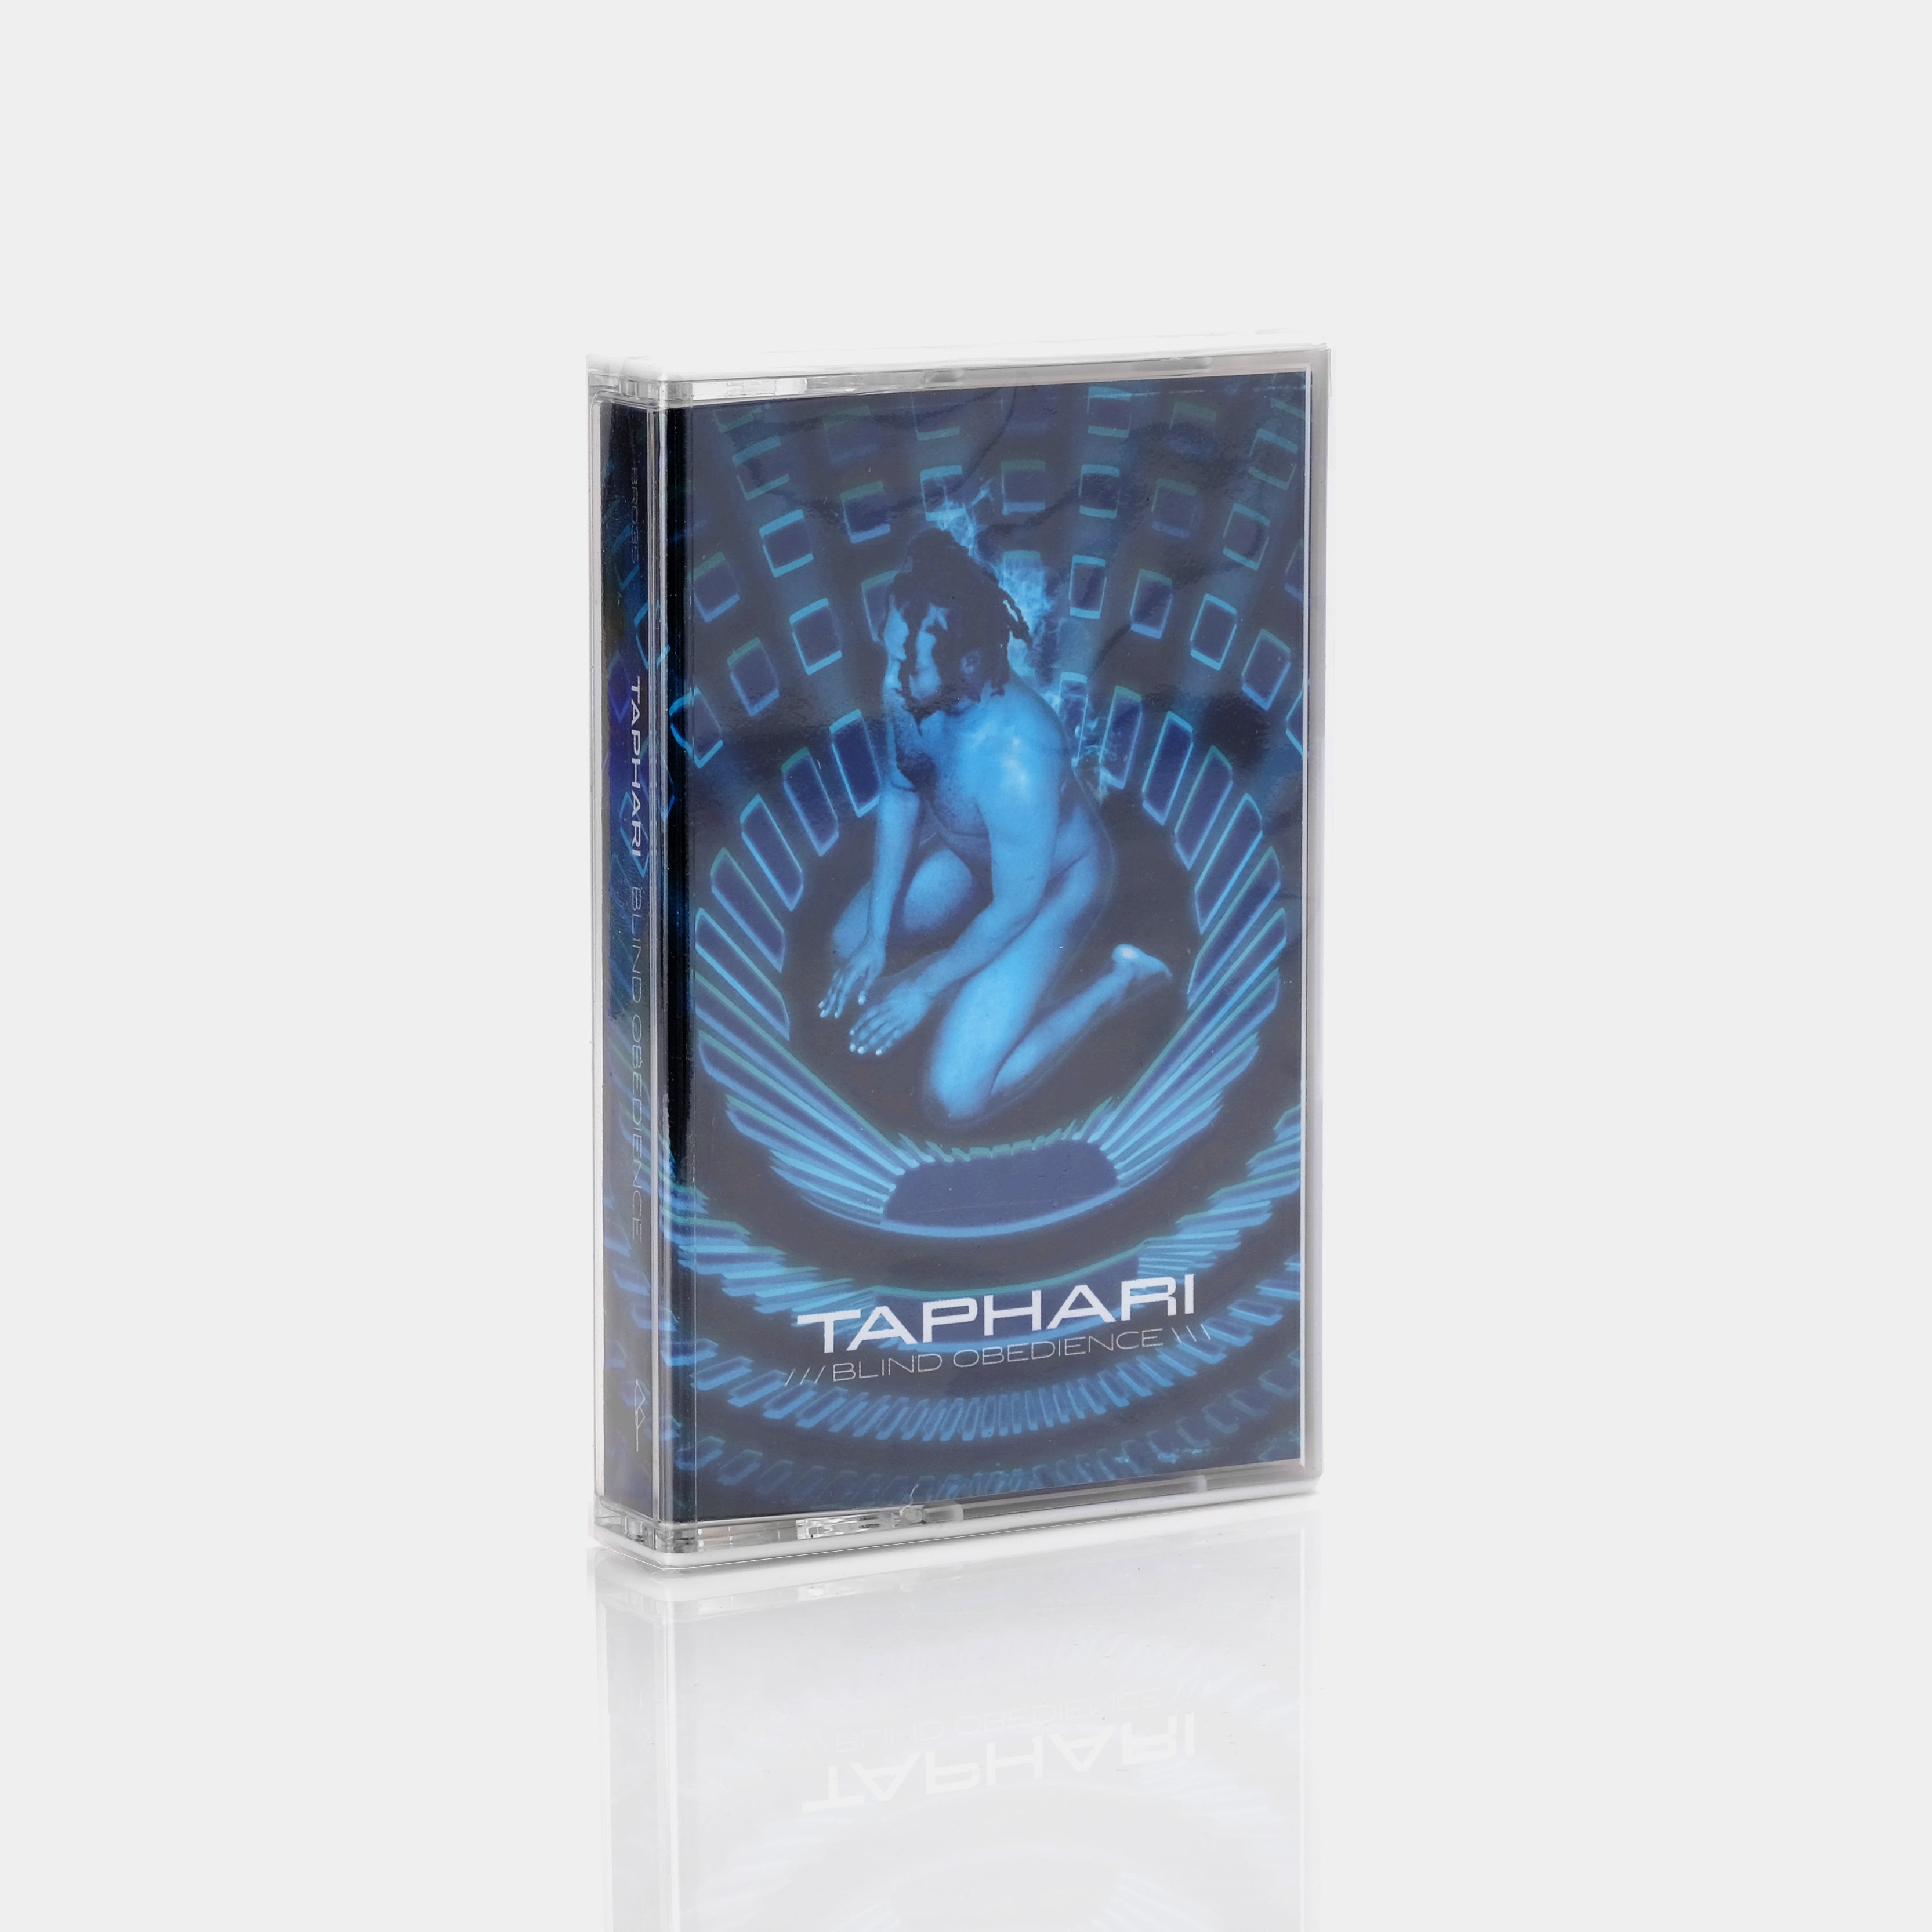 Taphari - Blind Obedience Cassette Tape